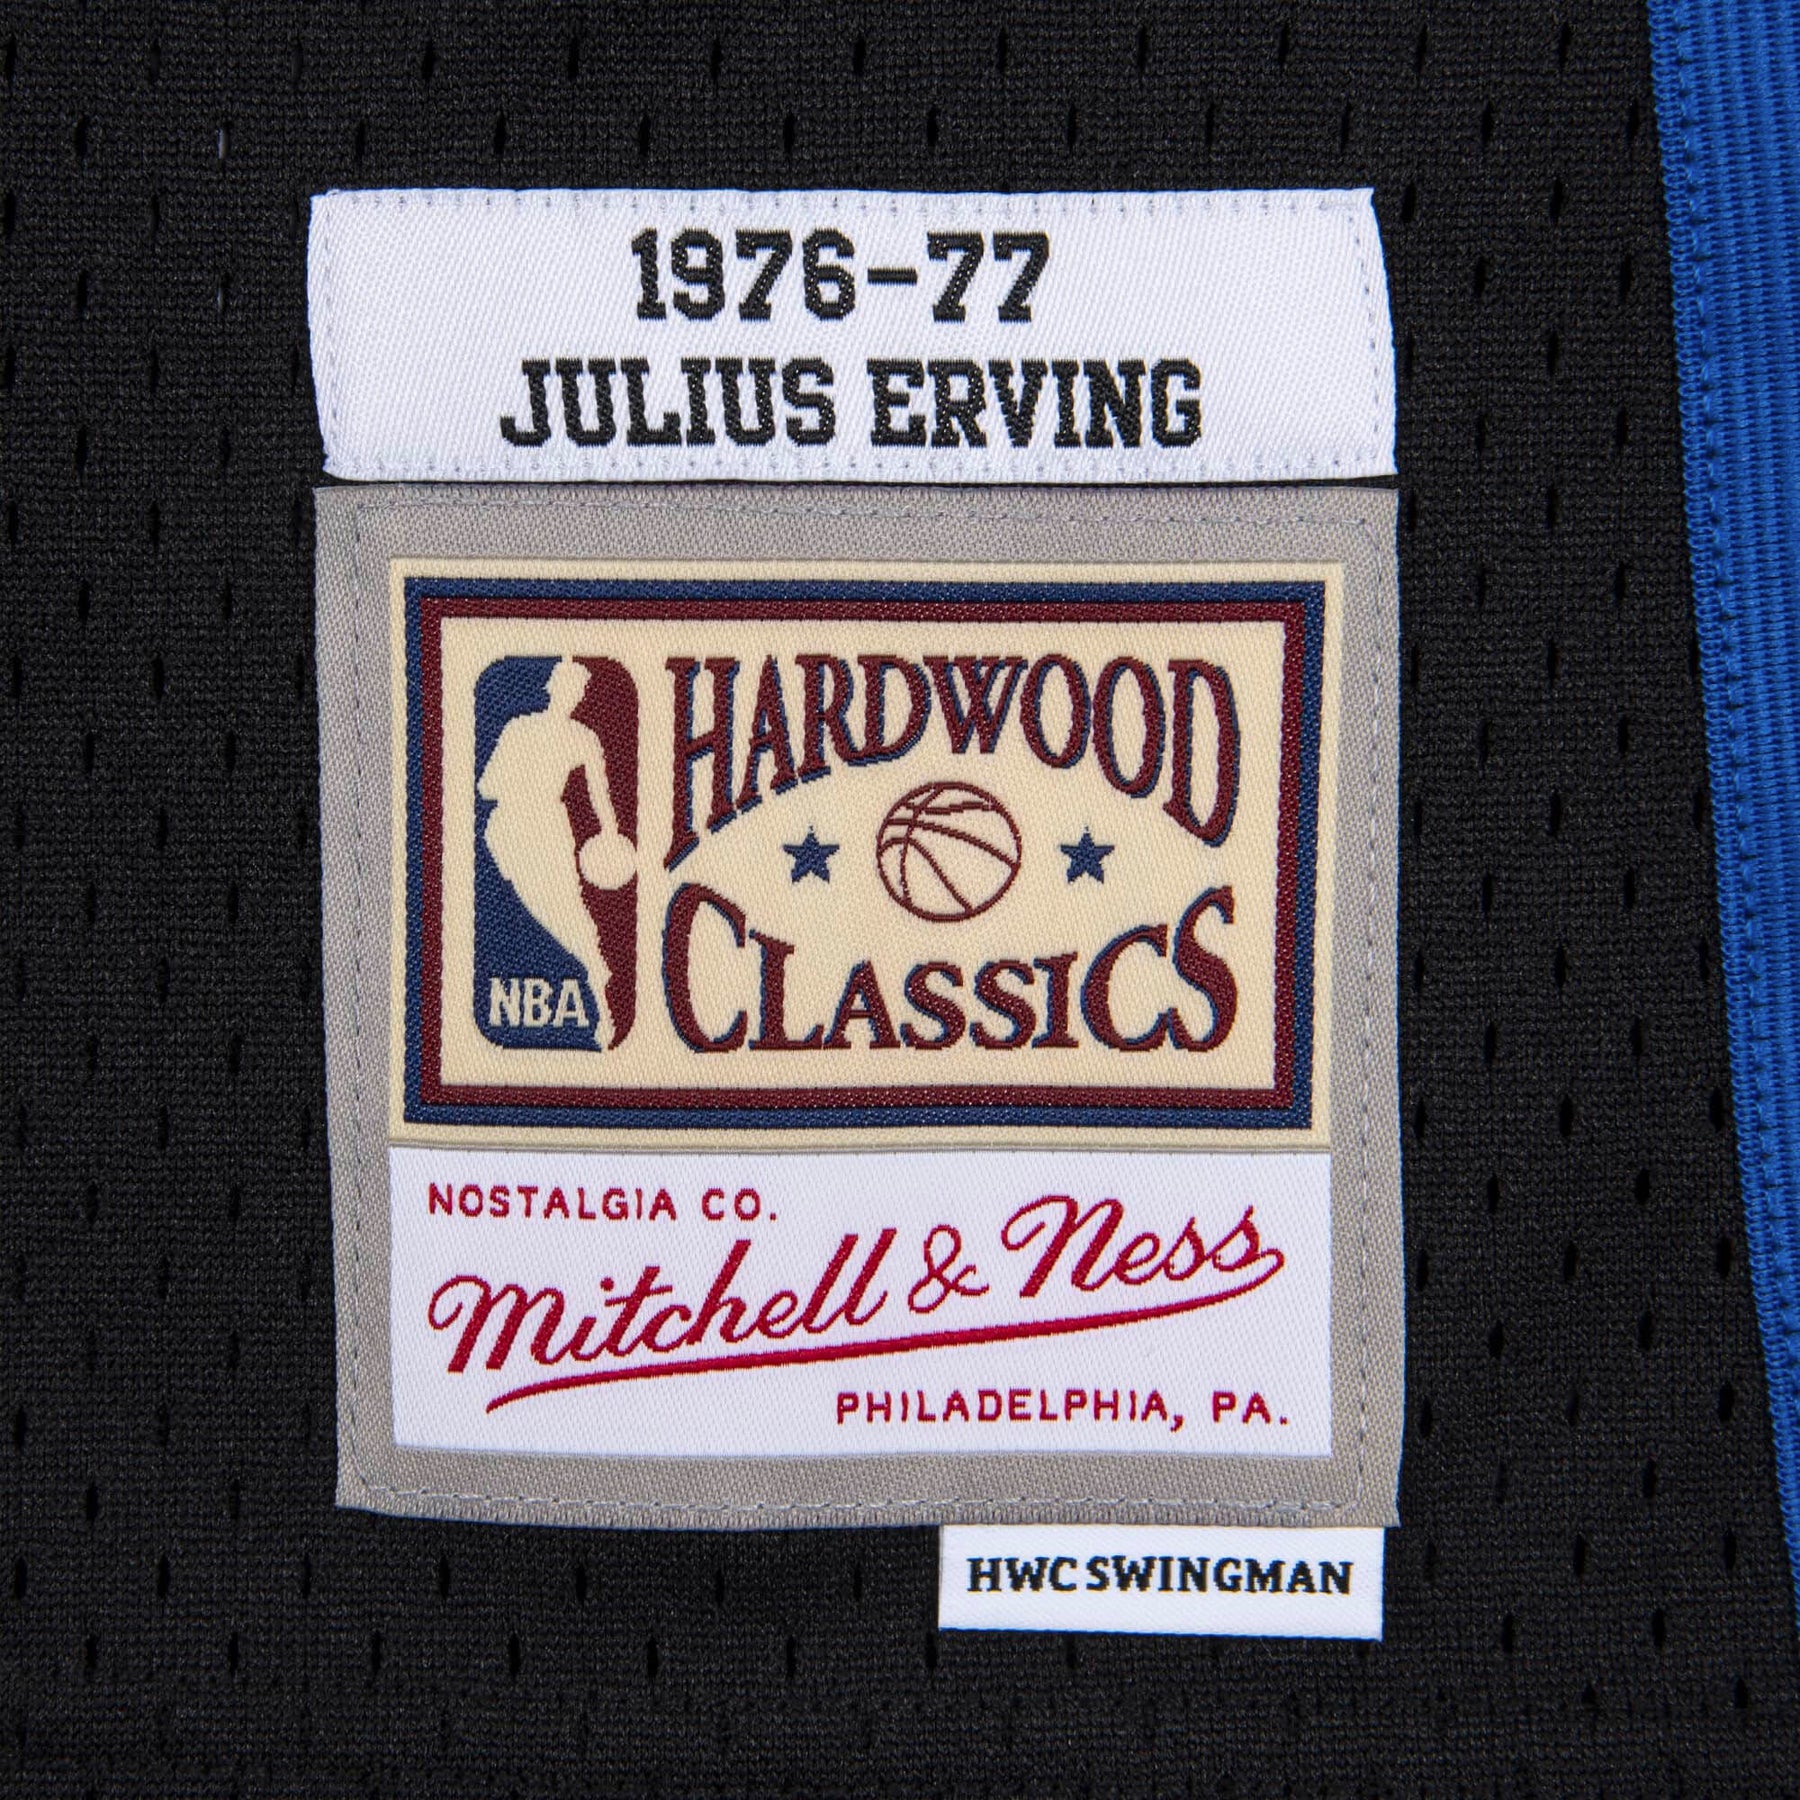 Philadelphia 76ers Authentic Jerseys, Authentic Hardwood Classic